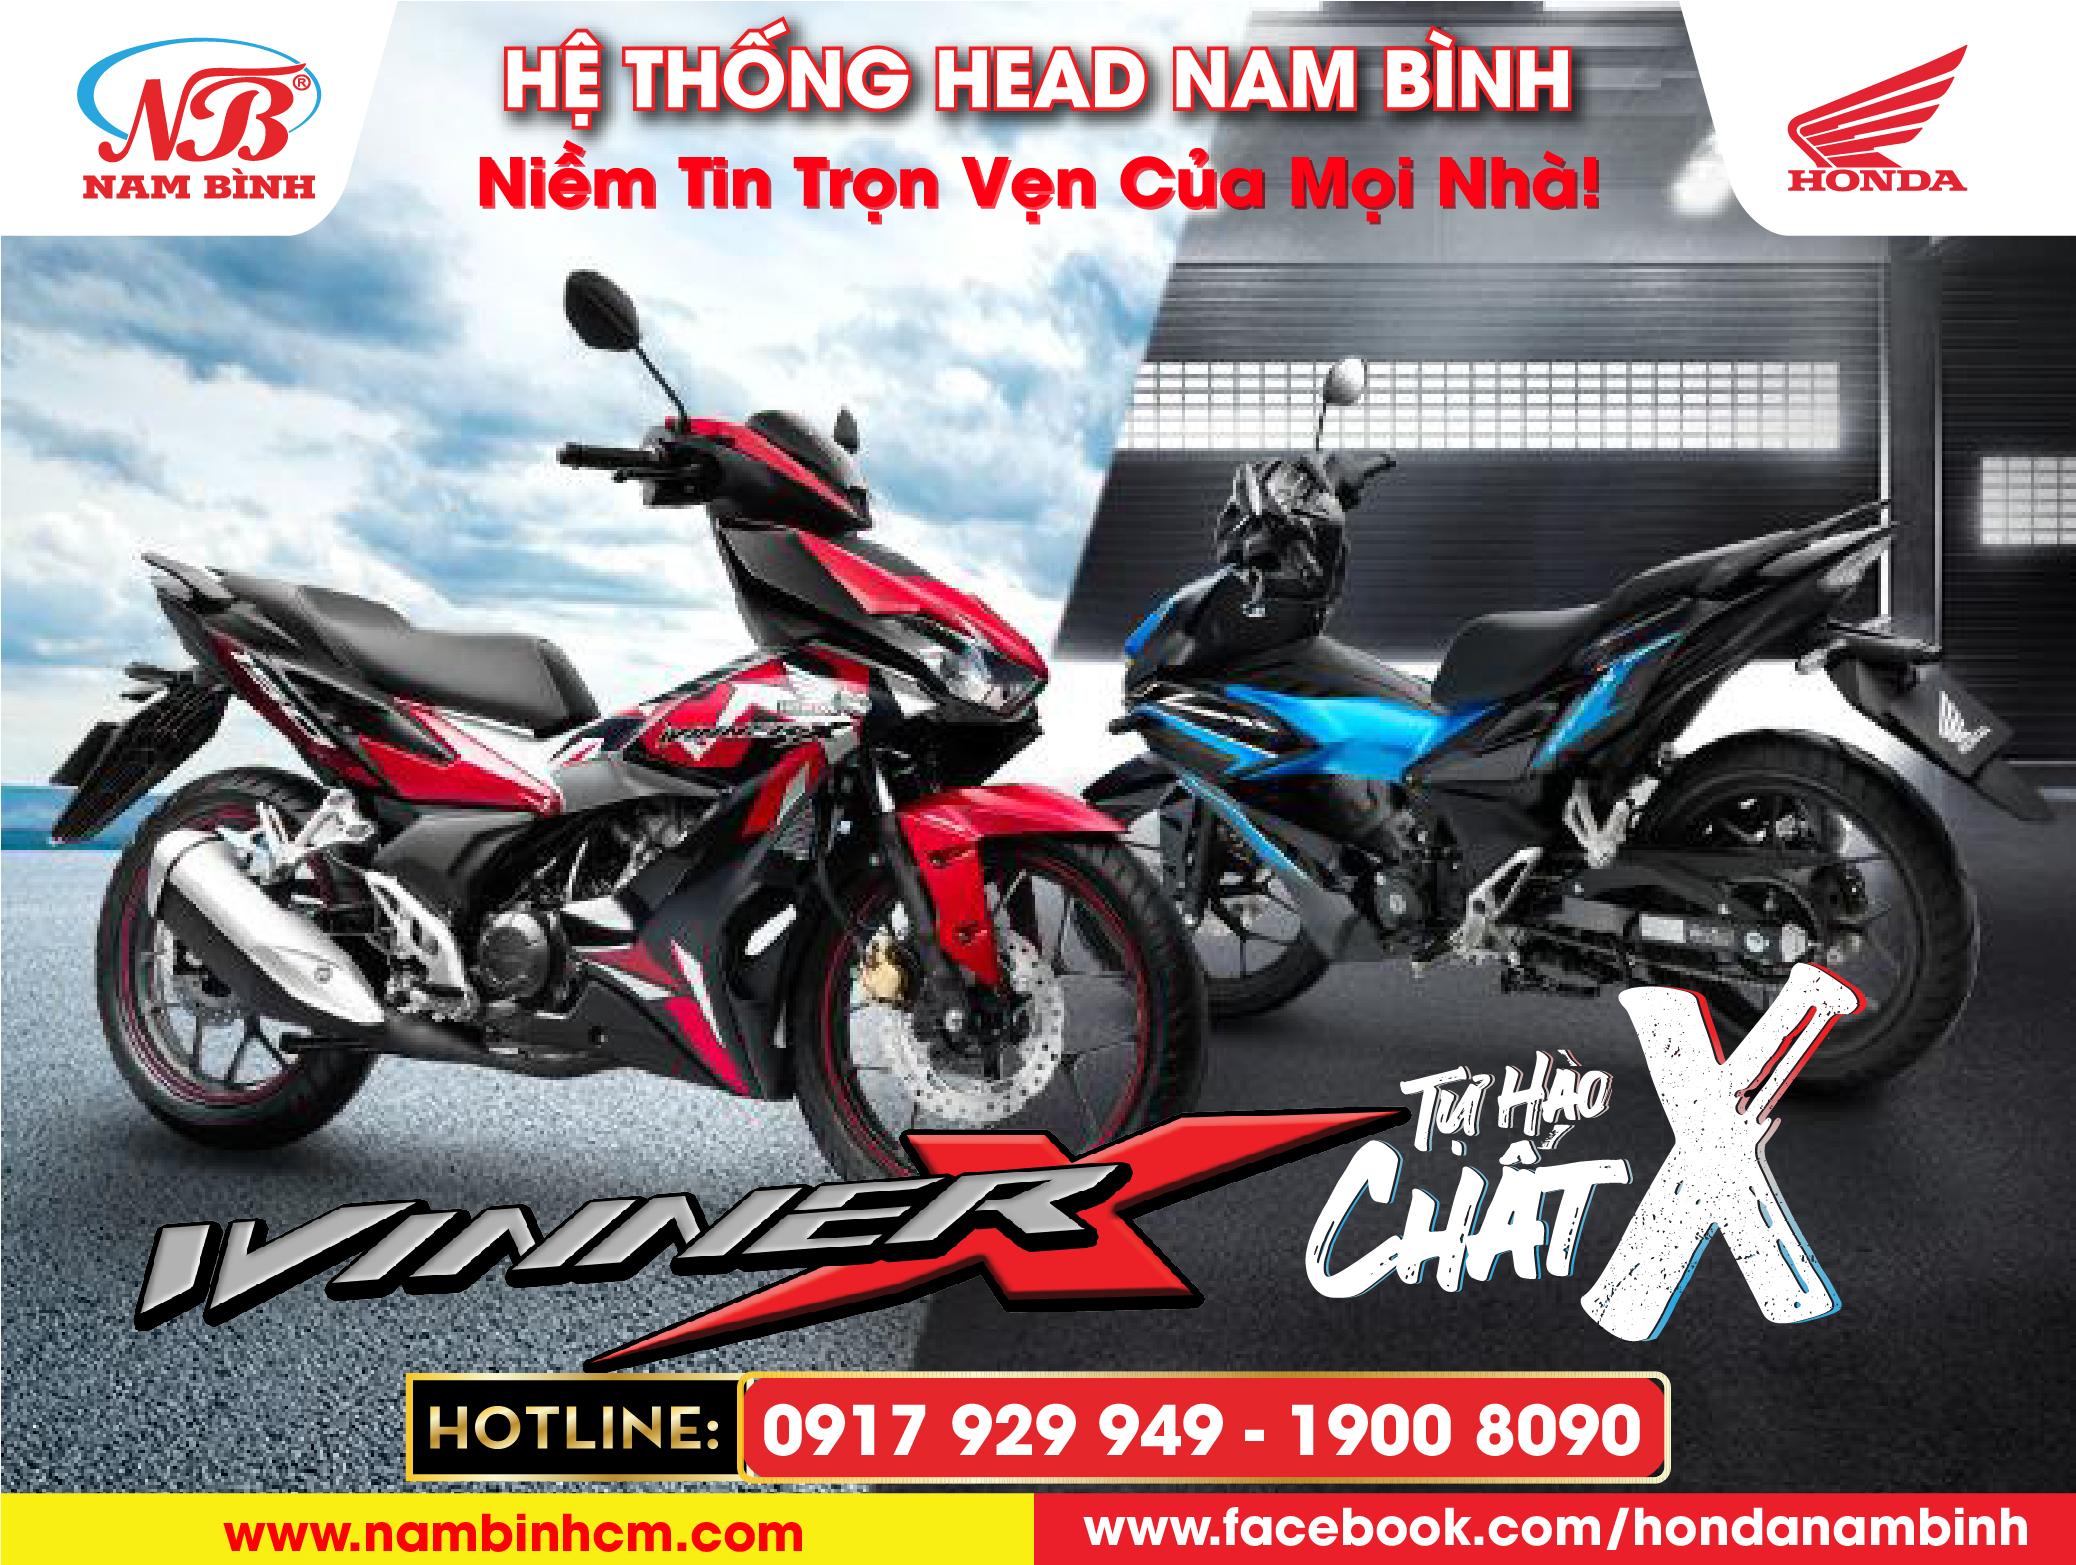 Honda Việt Nam bổ sung tem màu mới đậm chất thể thao cho siêu phẩm WINNER X - “Tự hào chất X” 